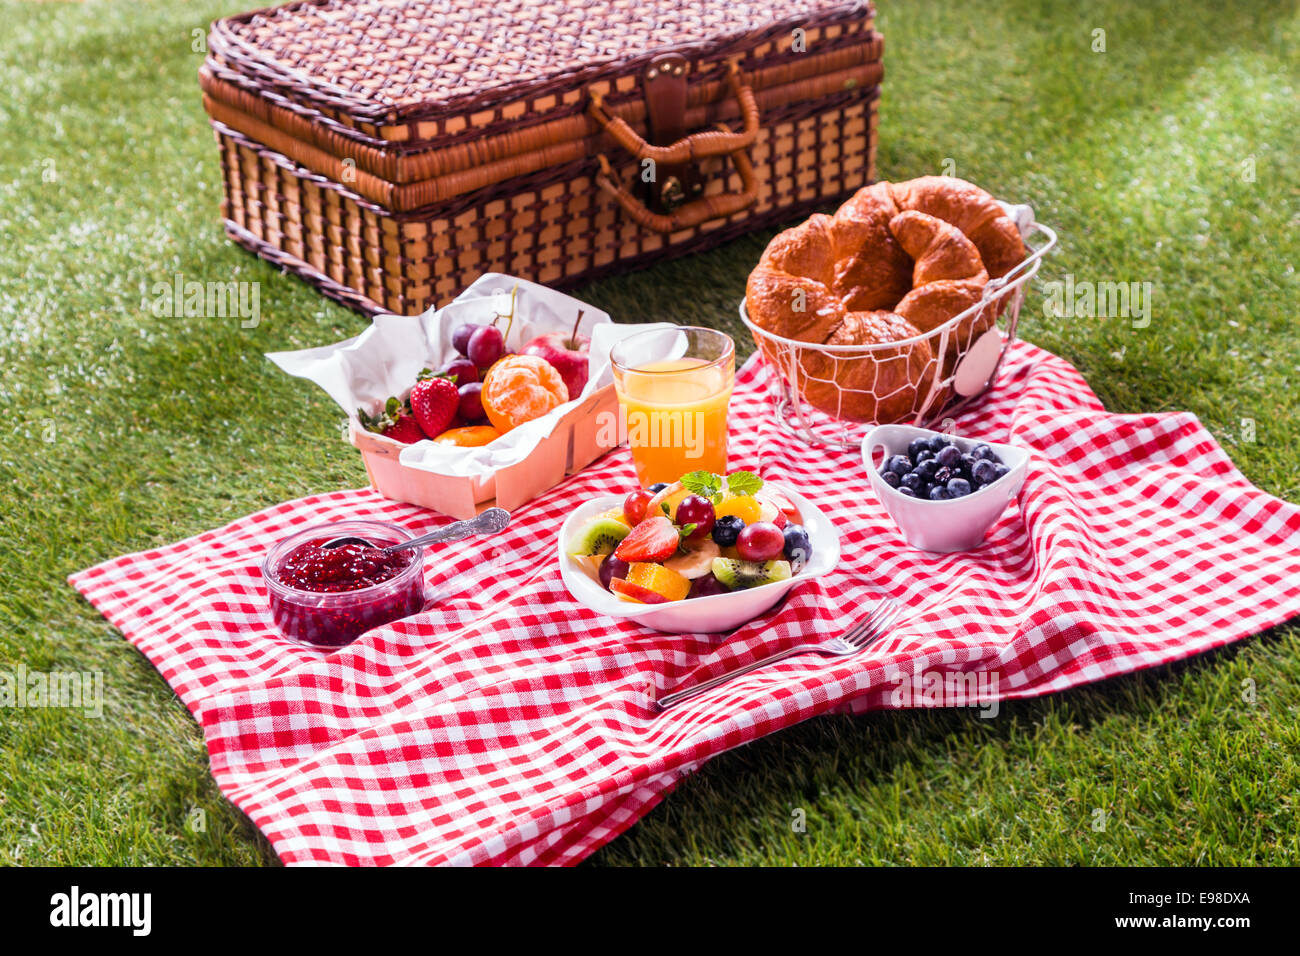 Bunte gesunde Sommer-Picknick ausgebreitet auf einem roten und weißen aufgegebenes Tuch neben einen geflochtenen Korb mit frischen Früchten und Obst Stockfoto